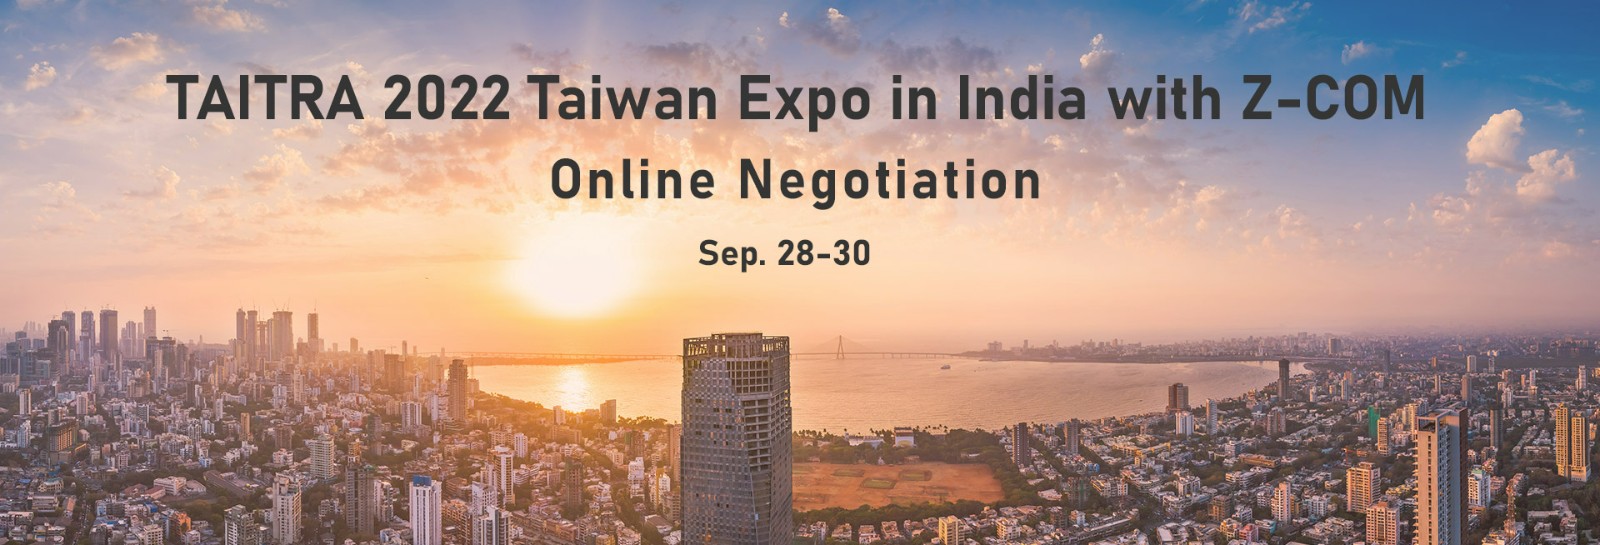 印度Taiwan-Expo(線上展)